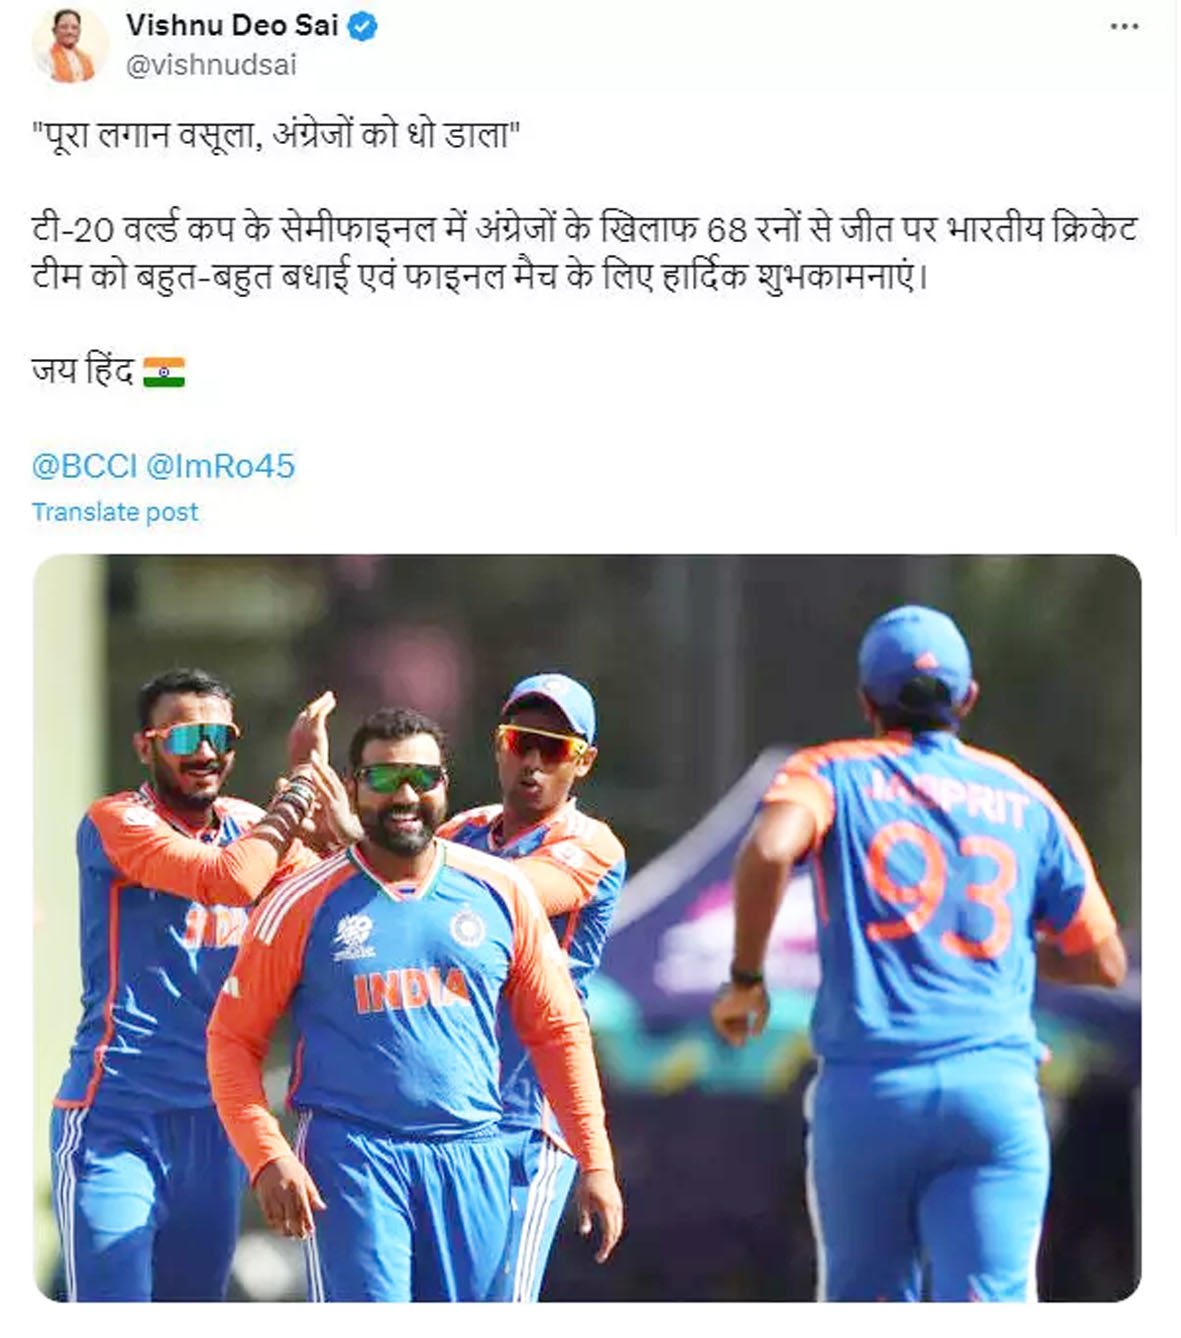 अंग्रेजों को धो डाला, टीम India की जीत पर CM विष्णुदेव साय ने किया ट्वीट